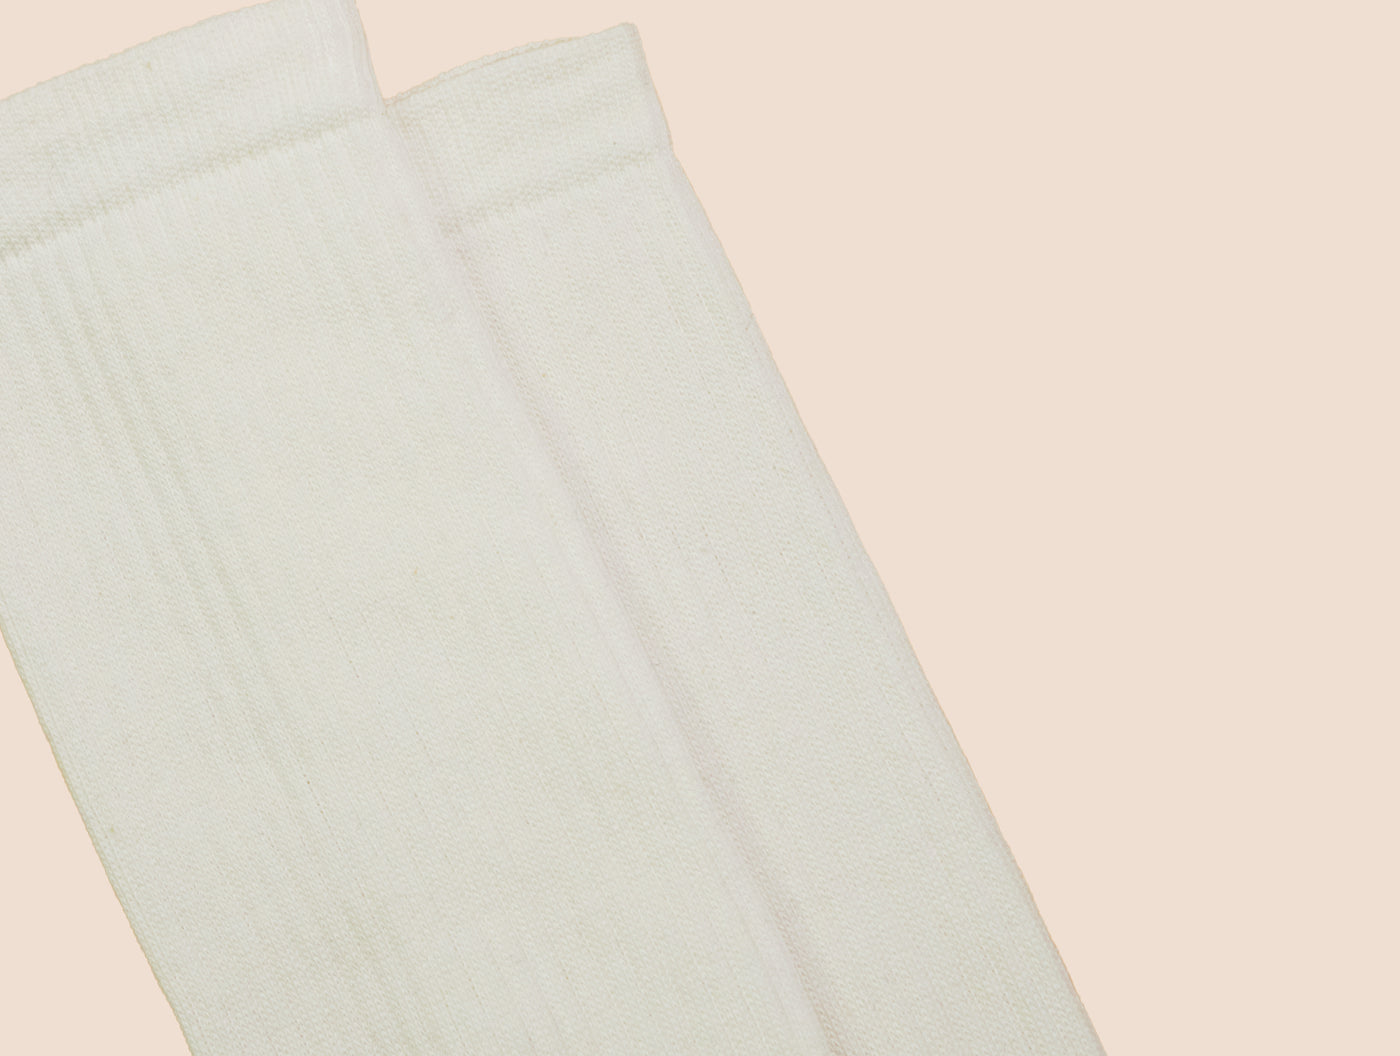 Petrone-chaussettes-tennis-coton-bio-unies-hautes-homme-blanc crème-posees#couleur_blanc crème